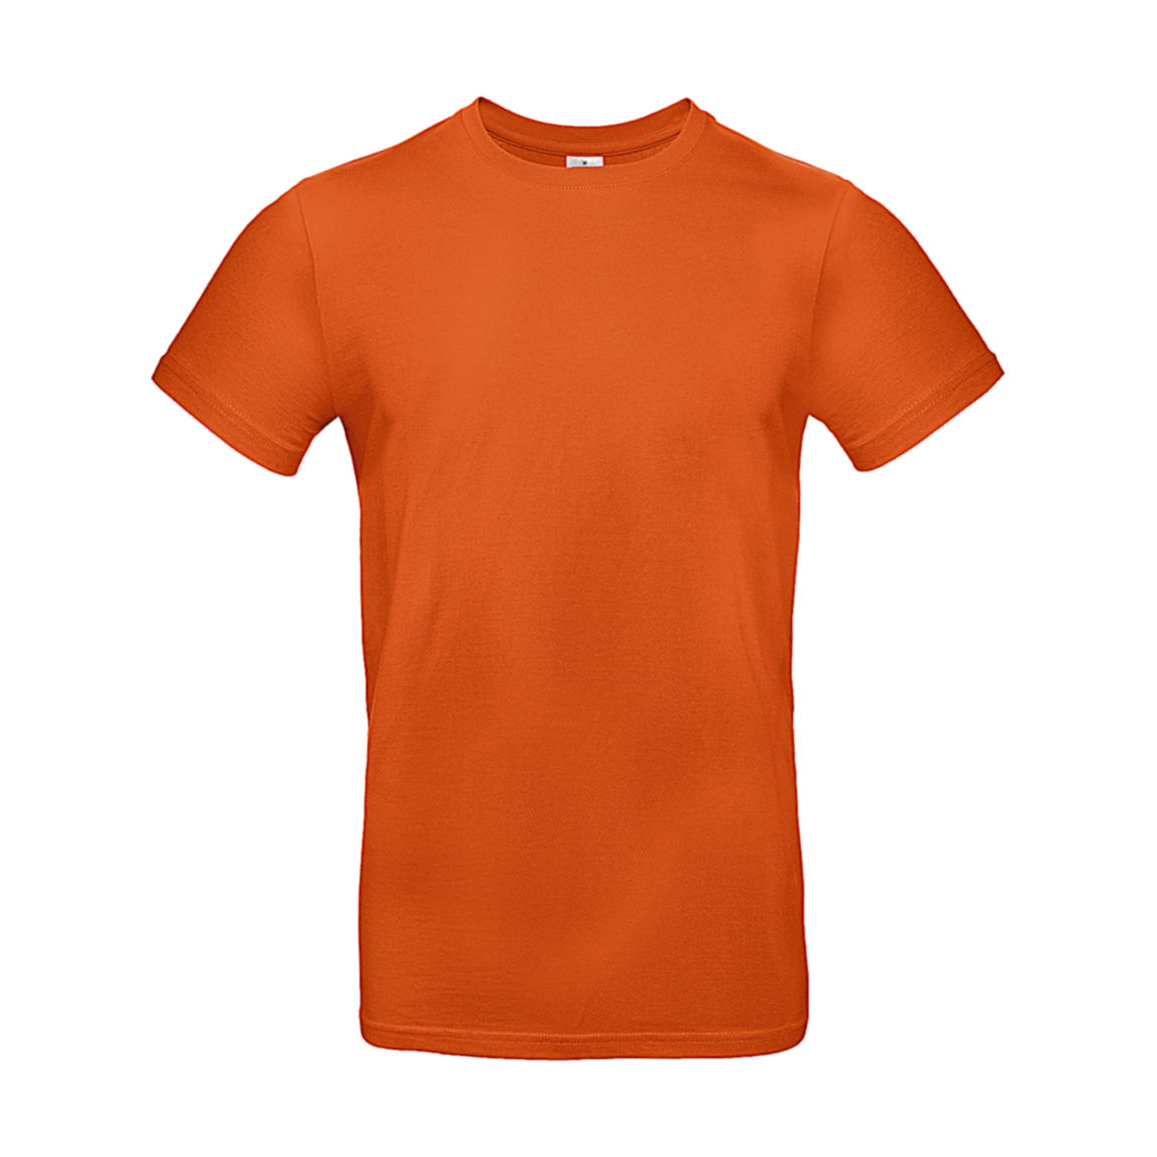 Triko pánské B&C E190 T-Shirt - středně oranžové, XS